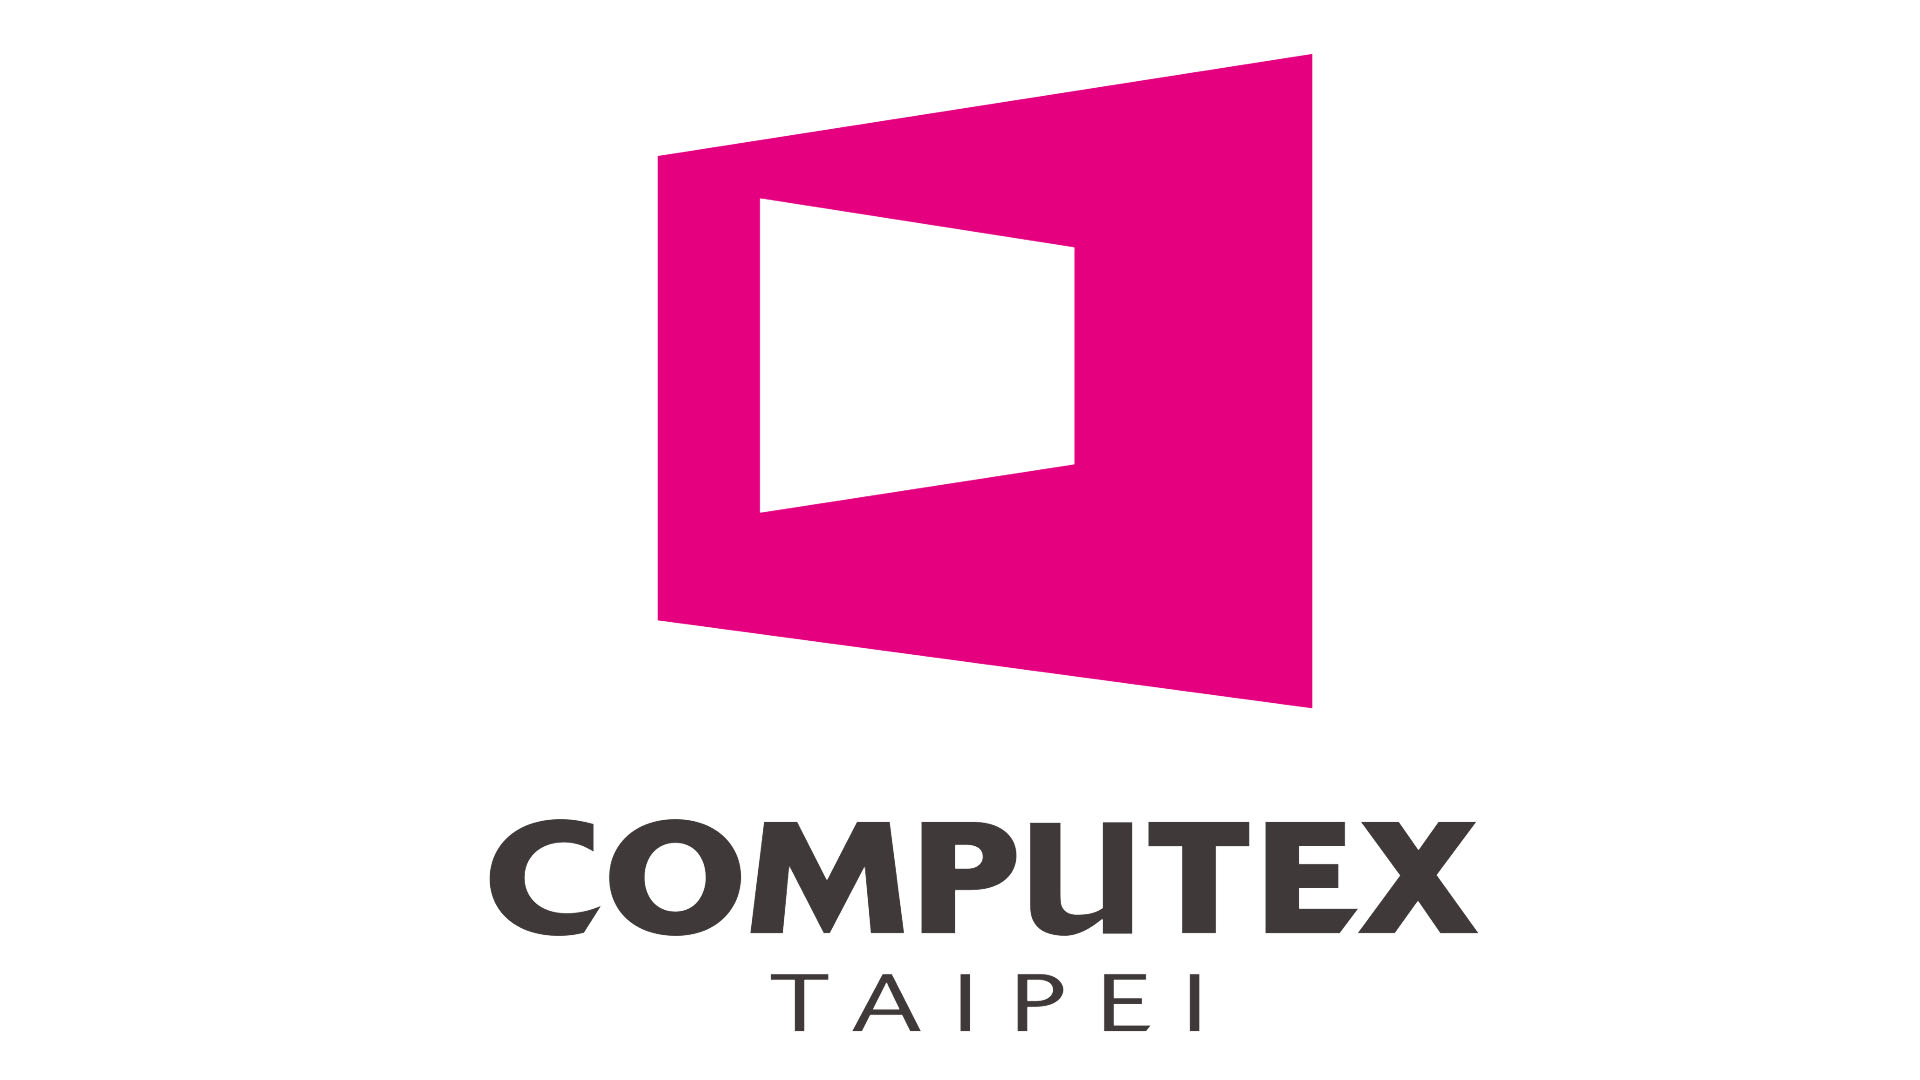 computex 2019